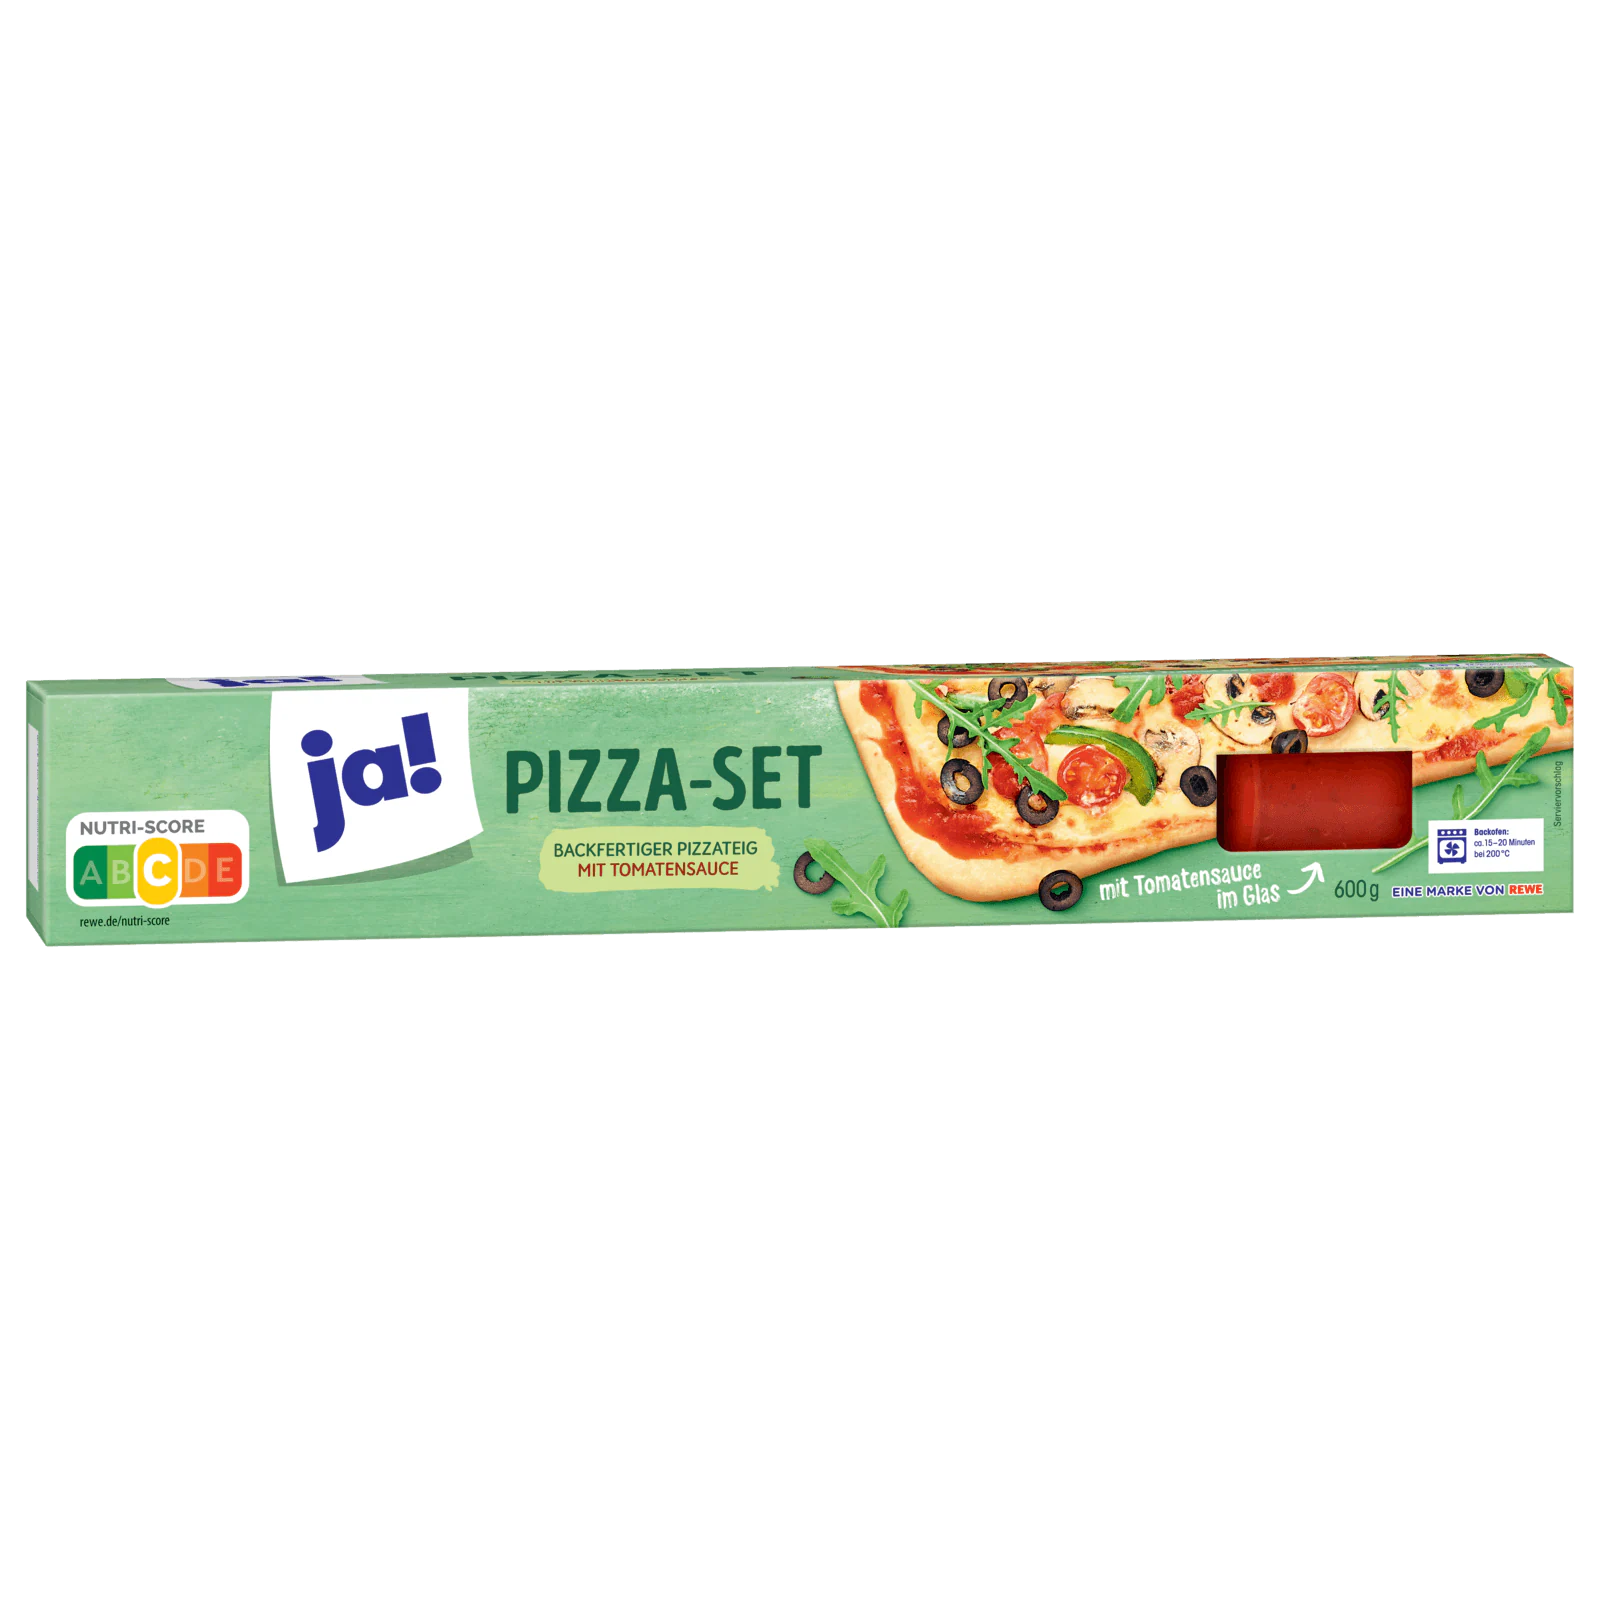 ja! Backfertiger Pizzateig mit Sauce 600g bei REWE online bestellen!